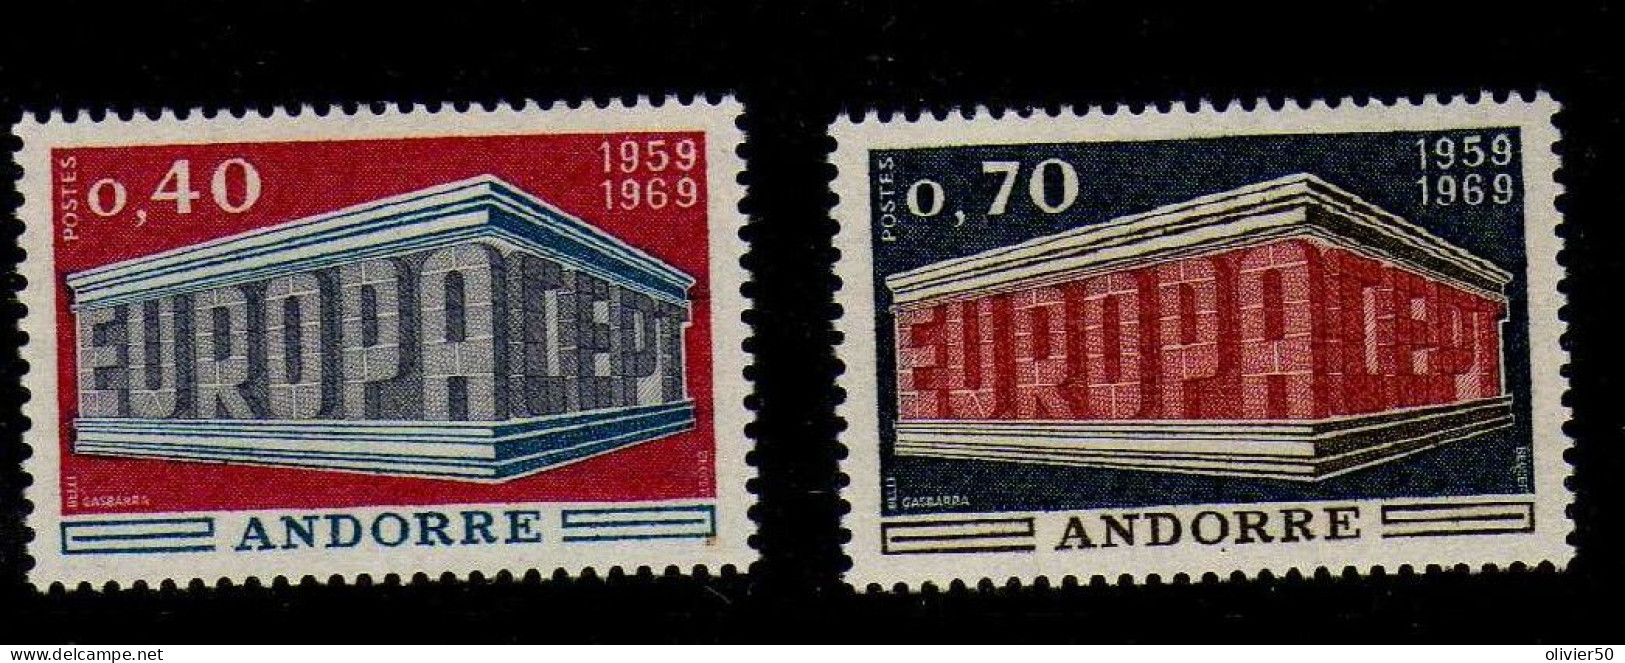 Andorre Francaise -  1969 - Europa  -Neufs** - MNH  - - Ongebruikt